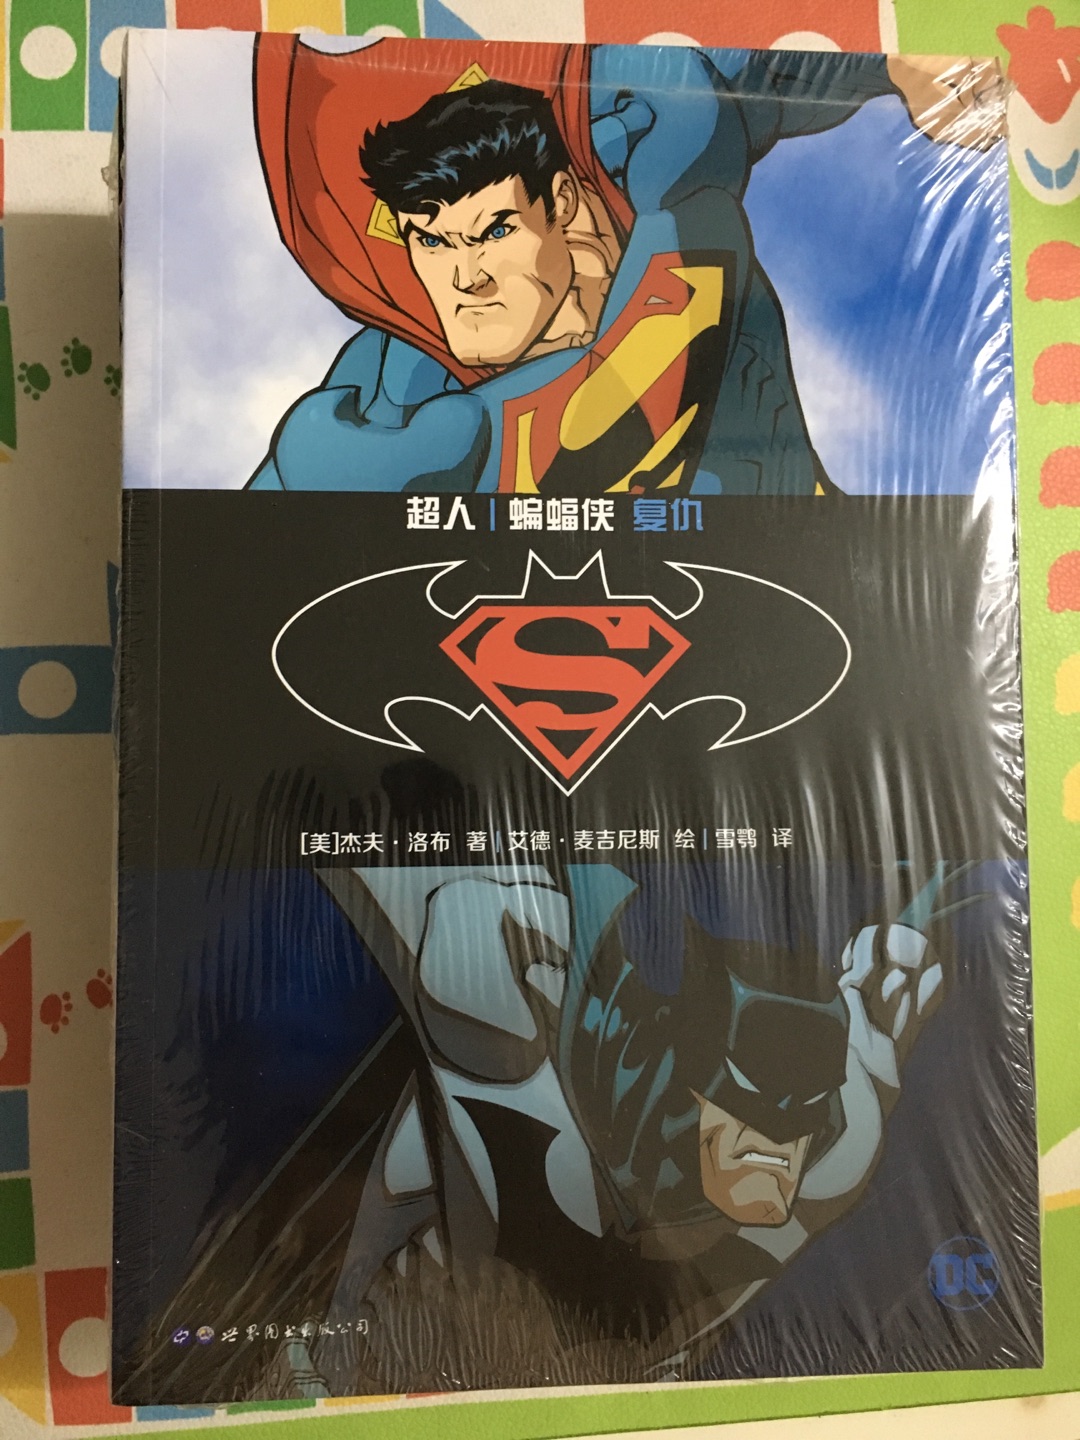 超人蝙蝠侠系列经典，非常爱看美漫特别是世界图书出版的